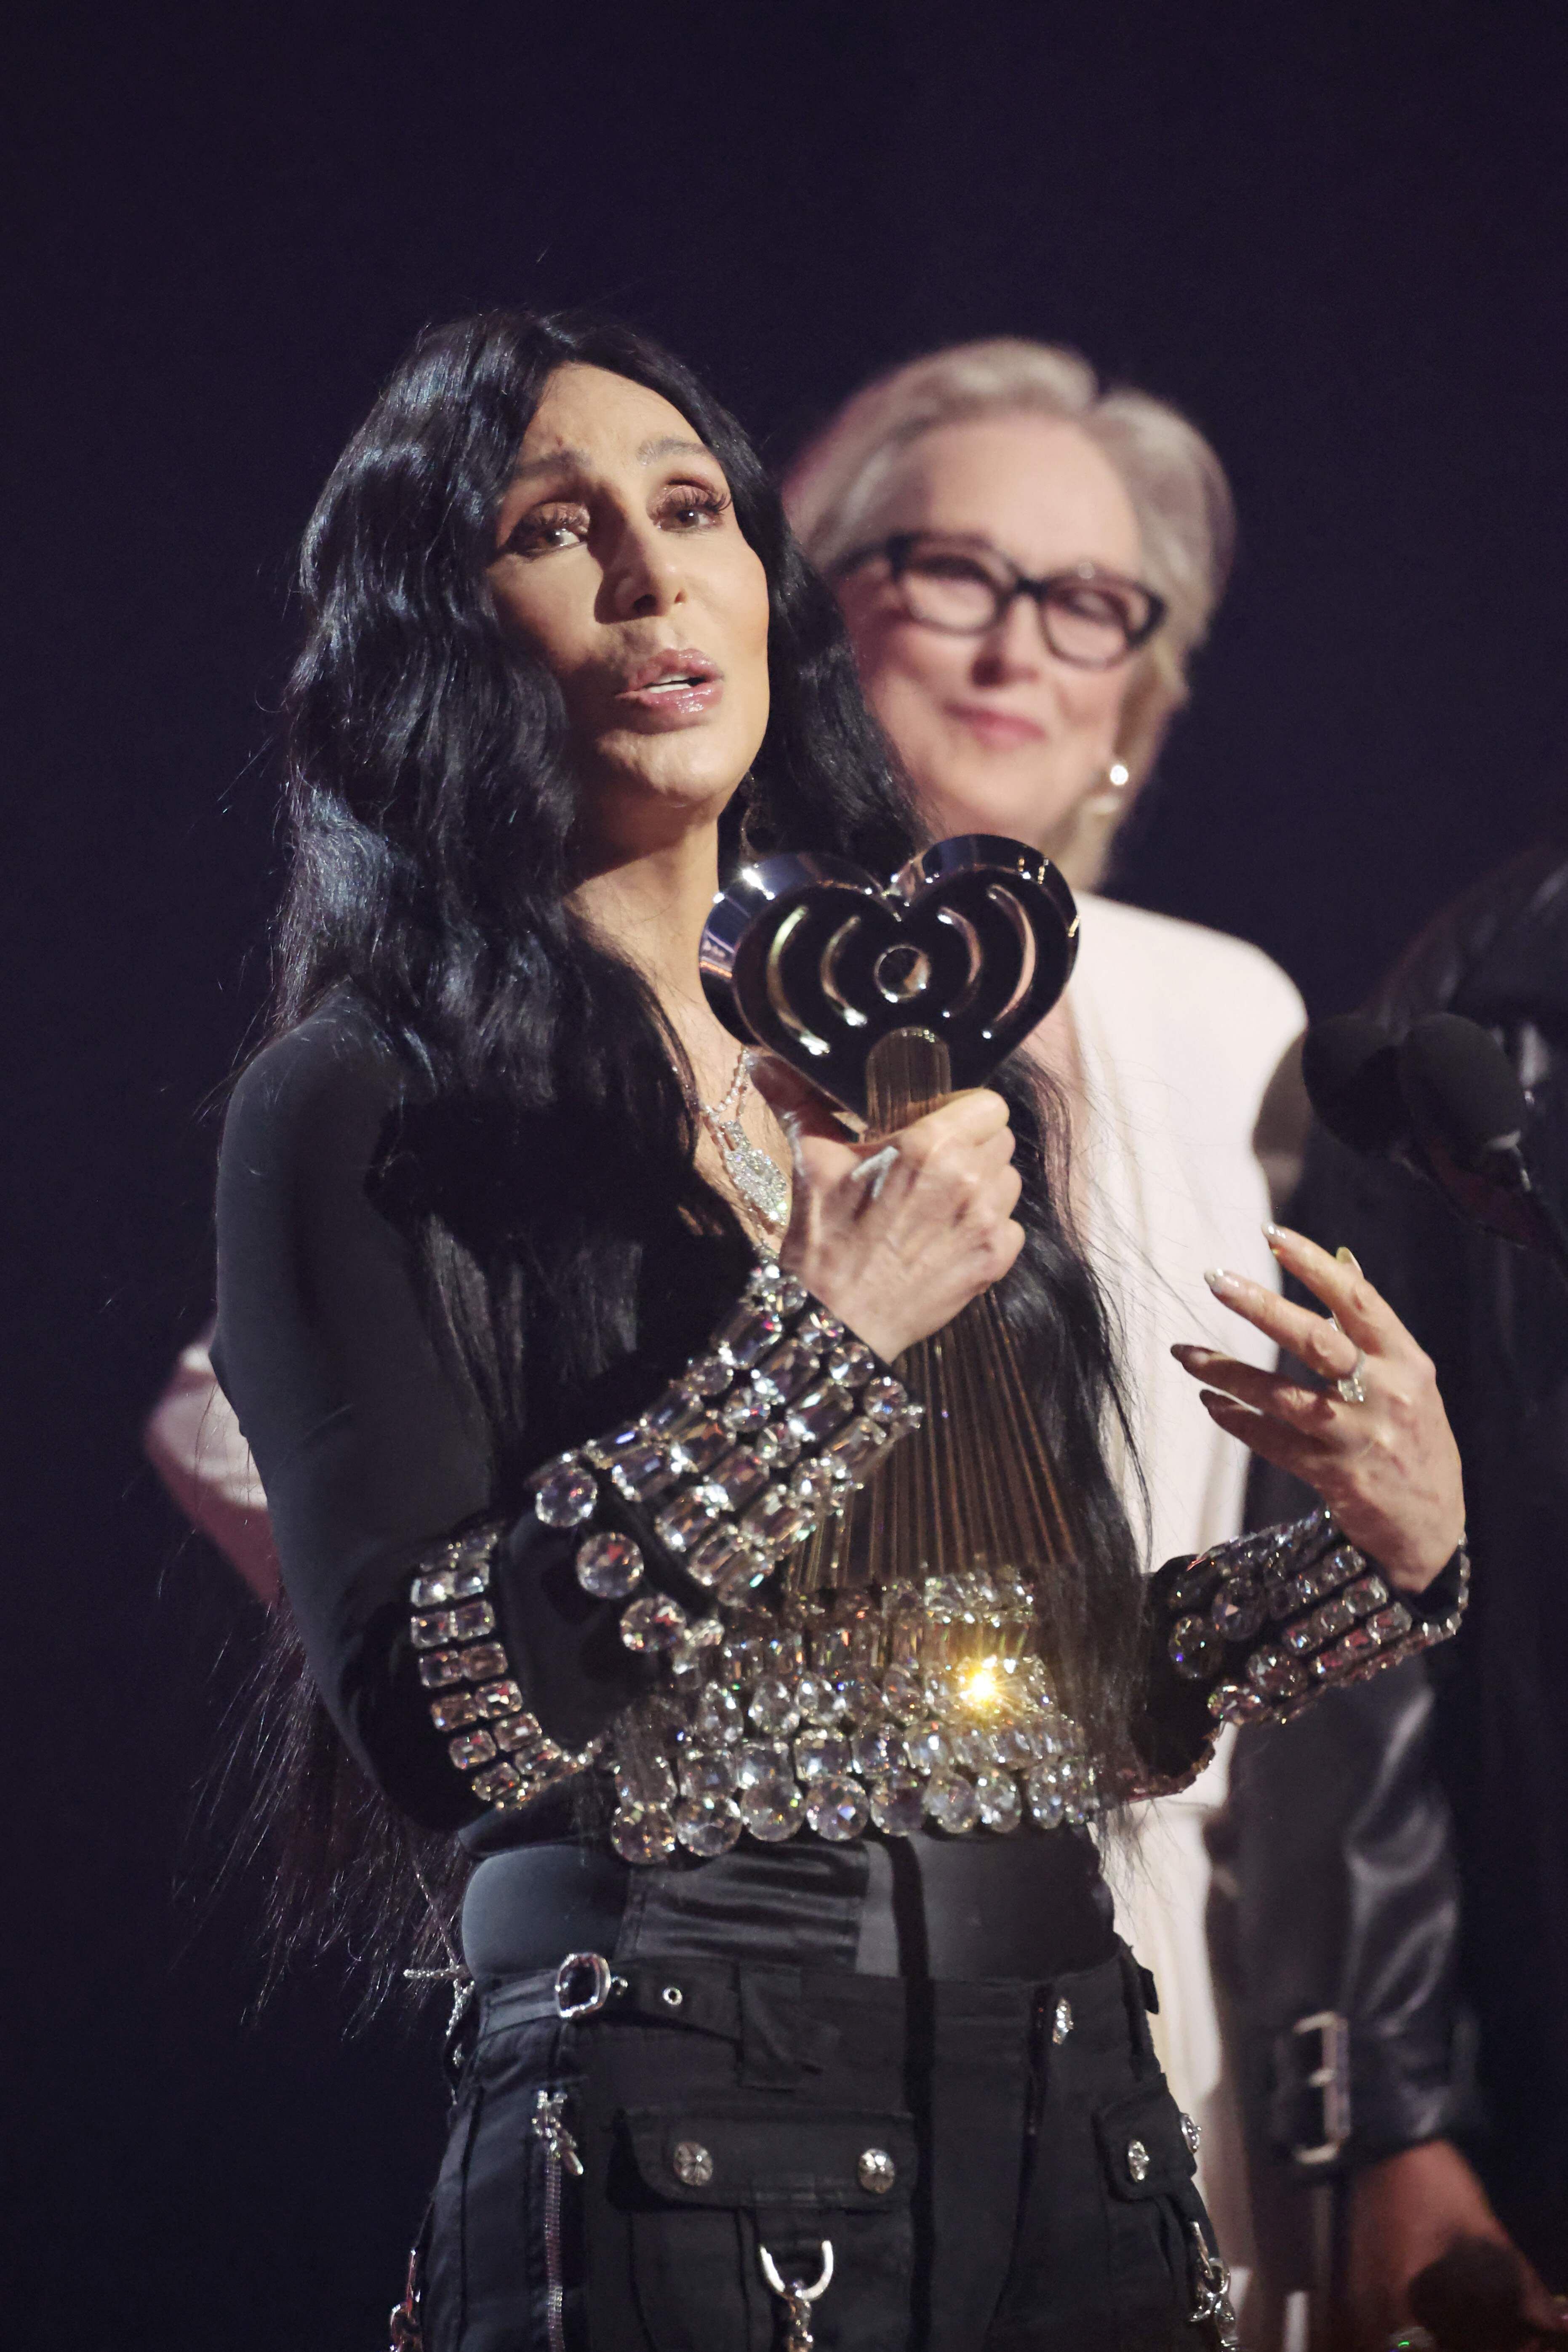 La estadounidense Cher recibió de manos de la actriz Meryl Streep el premio Ícono de los galardones iHeartRadio, por su trayectoria artística.